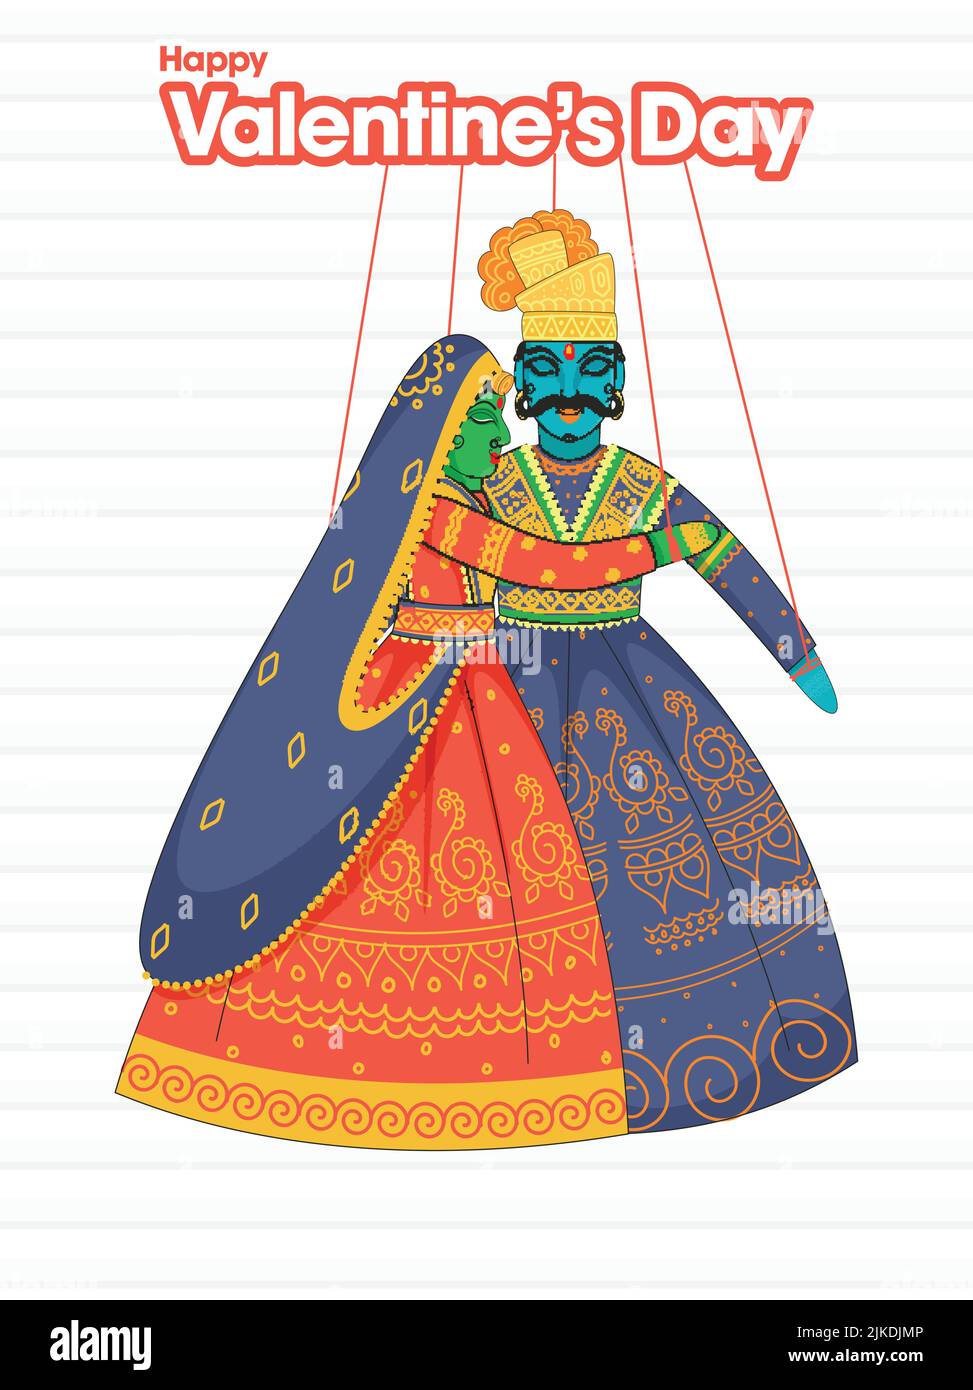 Rajasthani Man Stock Illustrations – 412 Rajasthani Man Stock  Illustrations, Vectors & Clipart - Dreamstime